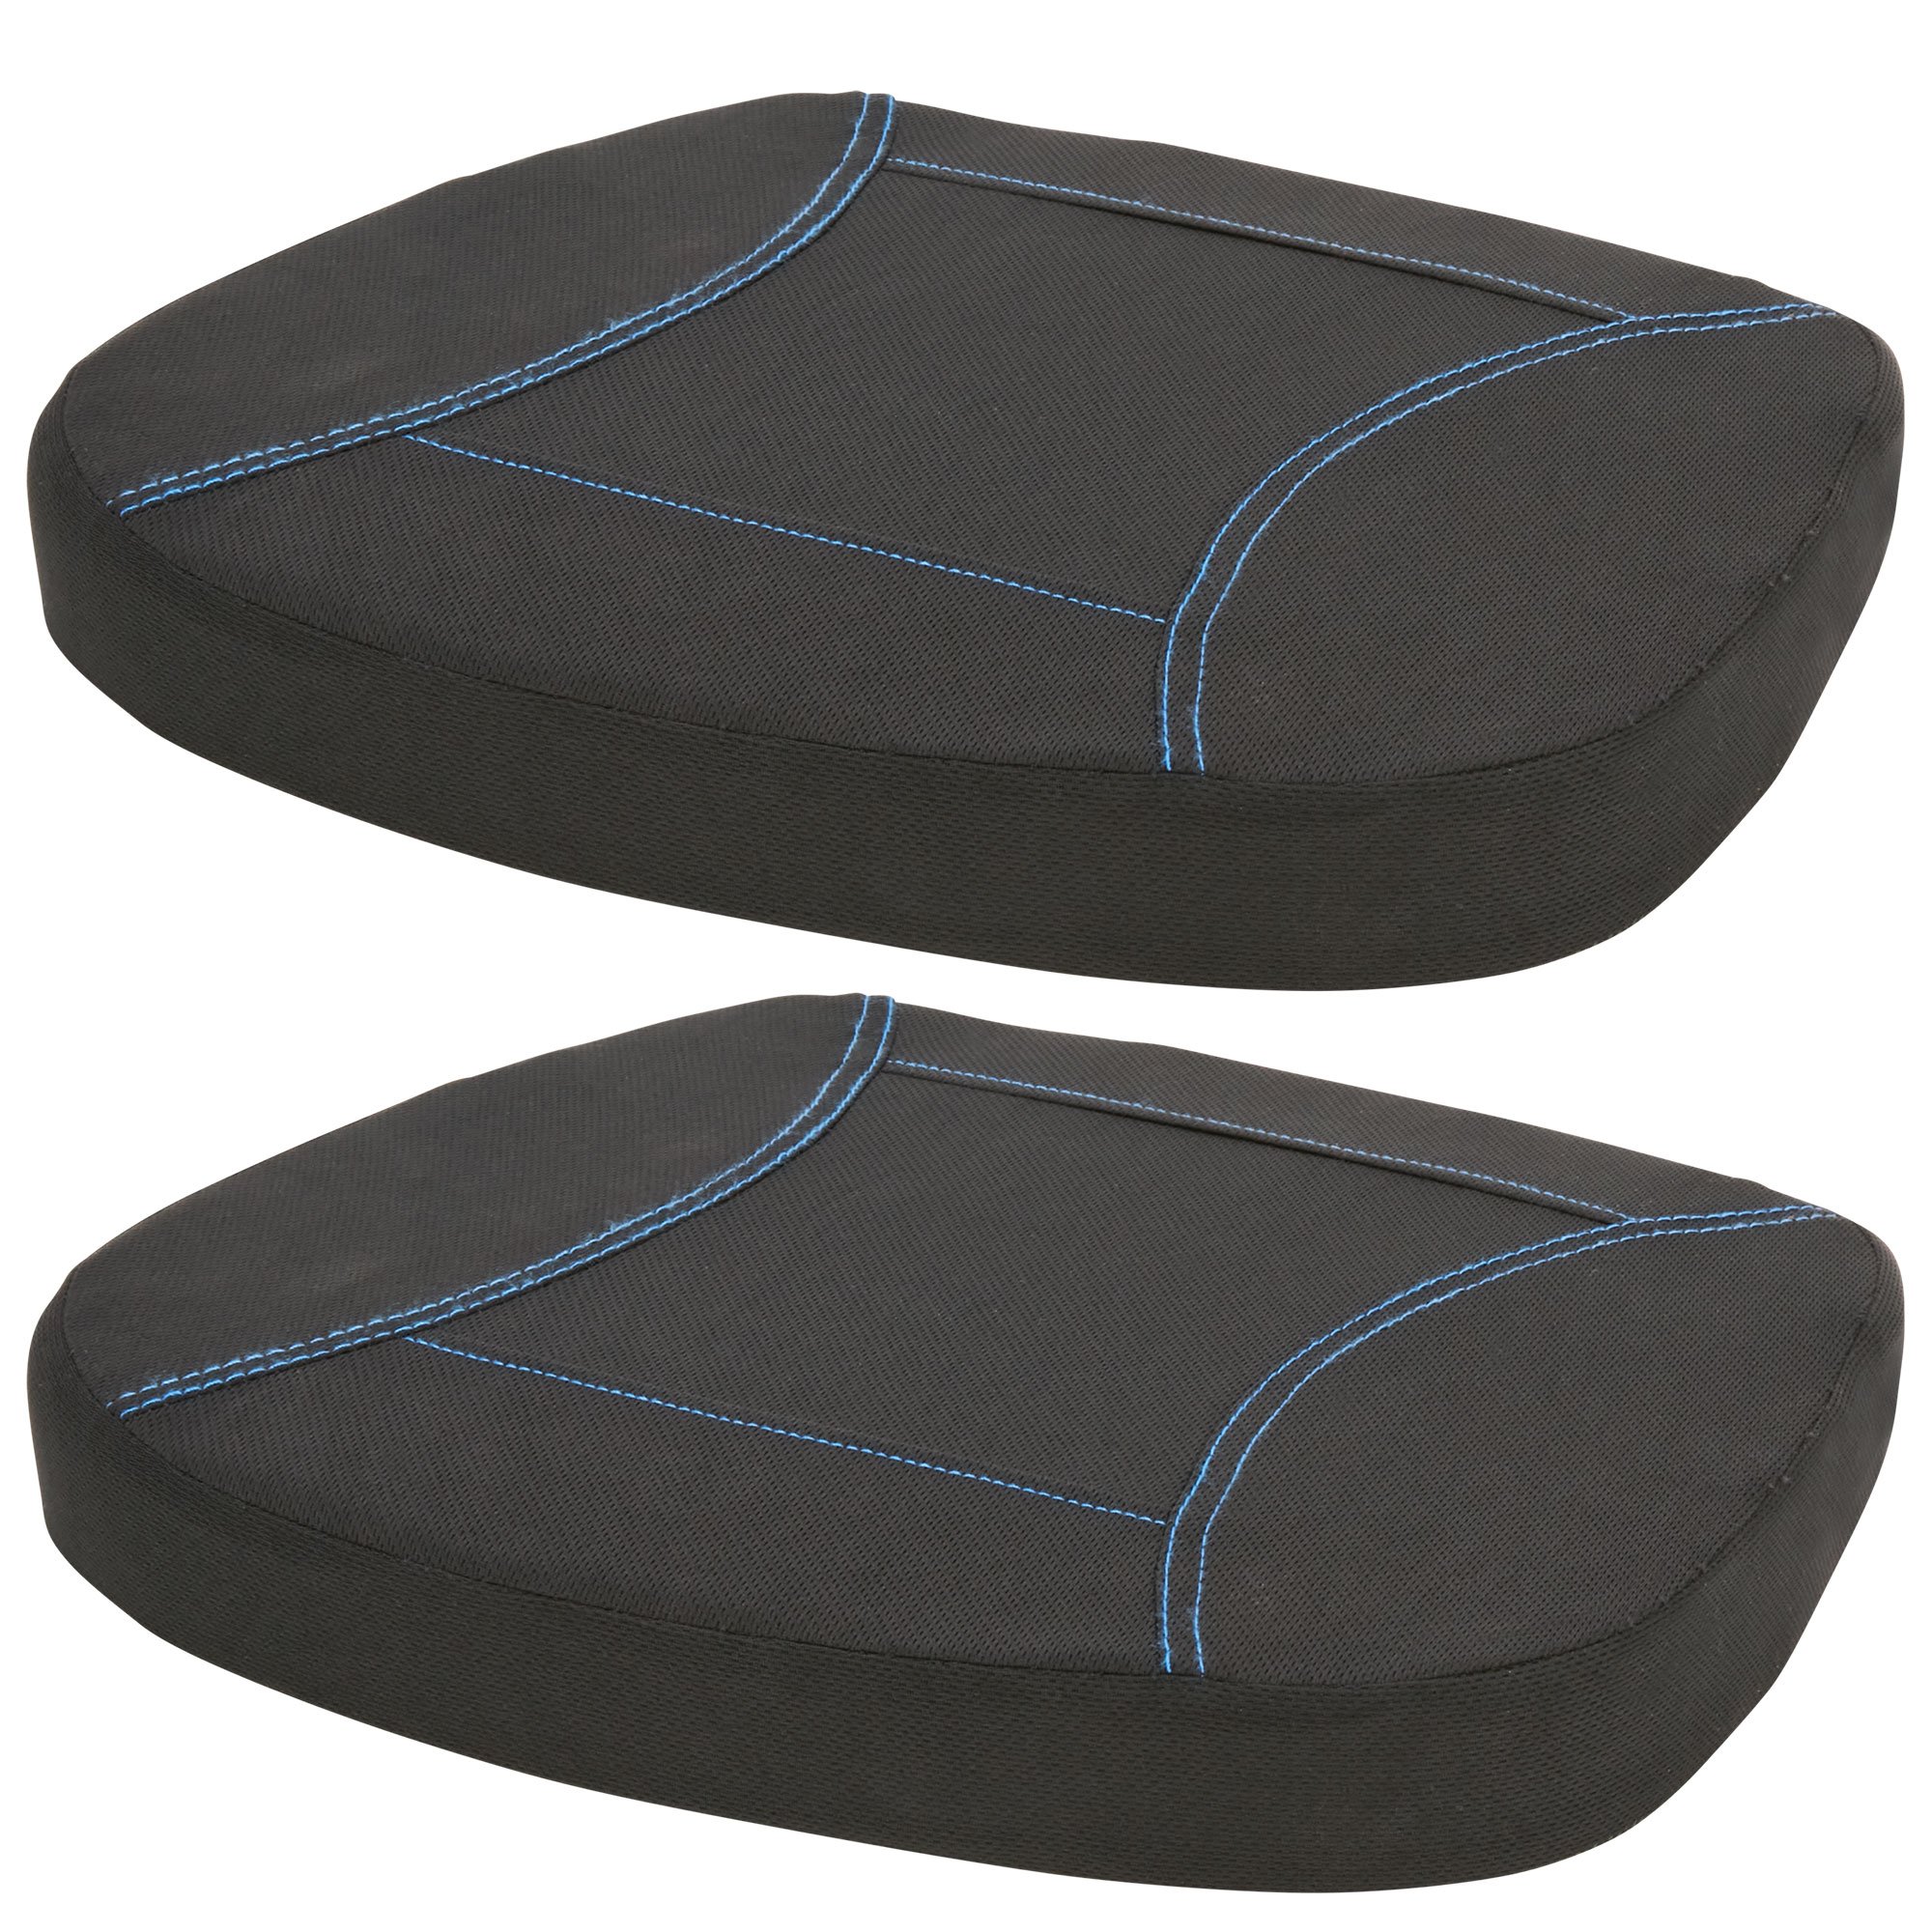 Gel Luxury Support Cushion Memory foam Car Seat Cushion